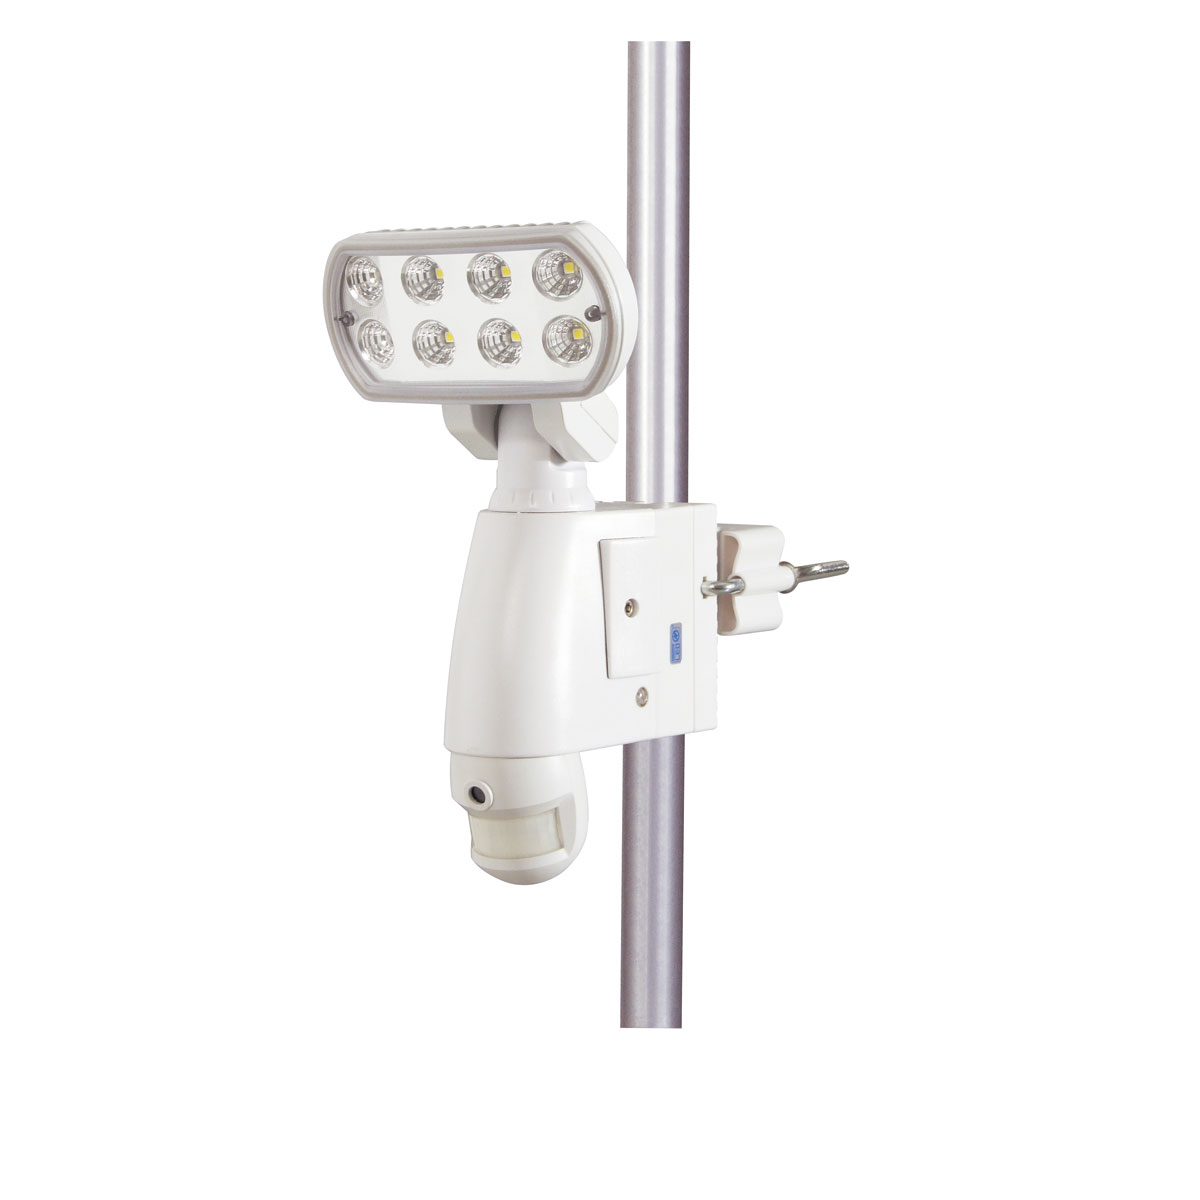 日動工業:カメラ付LED防犯ライト SLS-8W-C